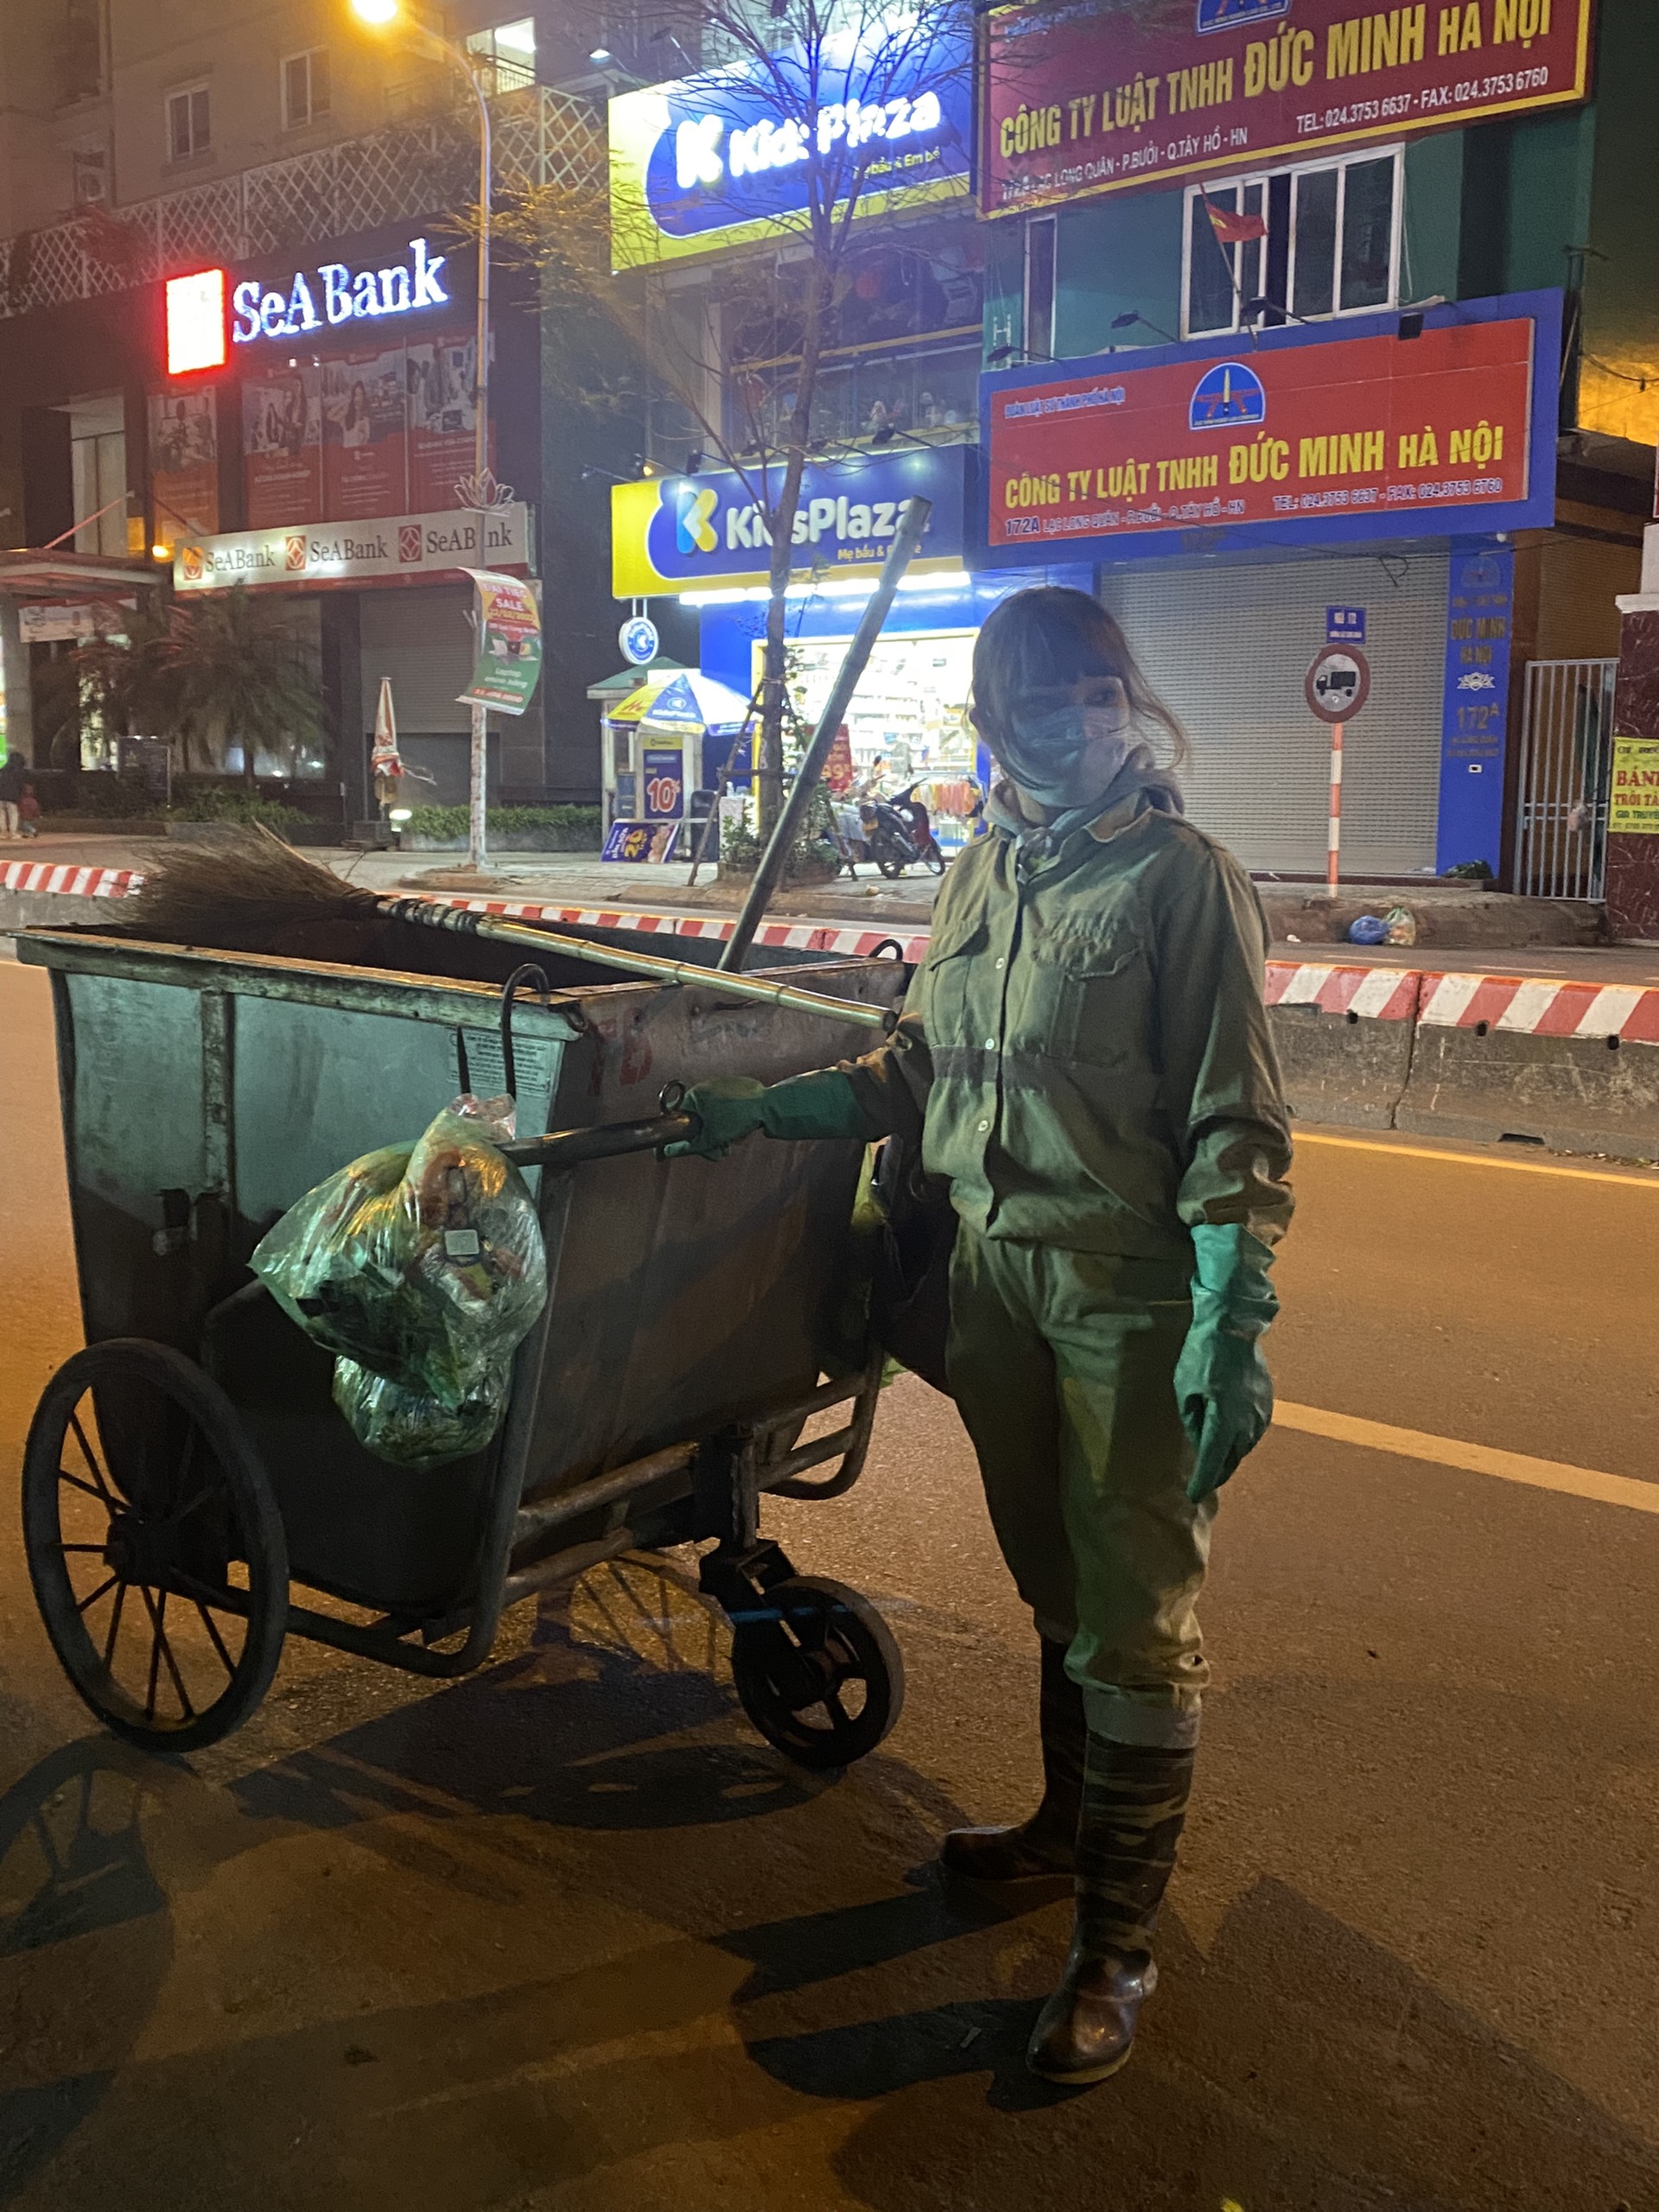 Nỗi cơ cực của công nhân quét rác giữa đêm giá lạnh “cắt da cắt thịt” ở Thủ đô Hà Nội  - Ảnh 2.